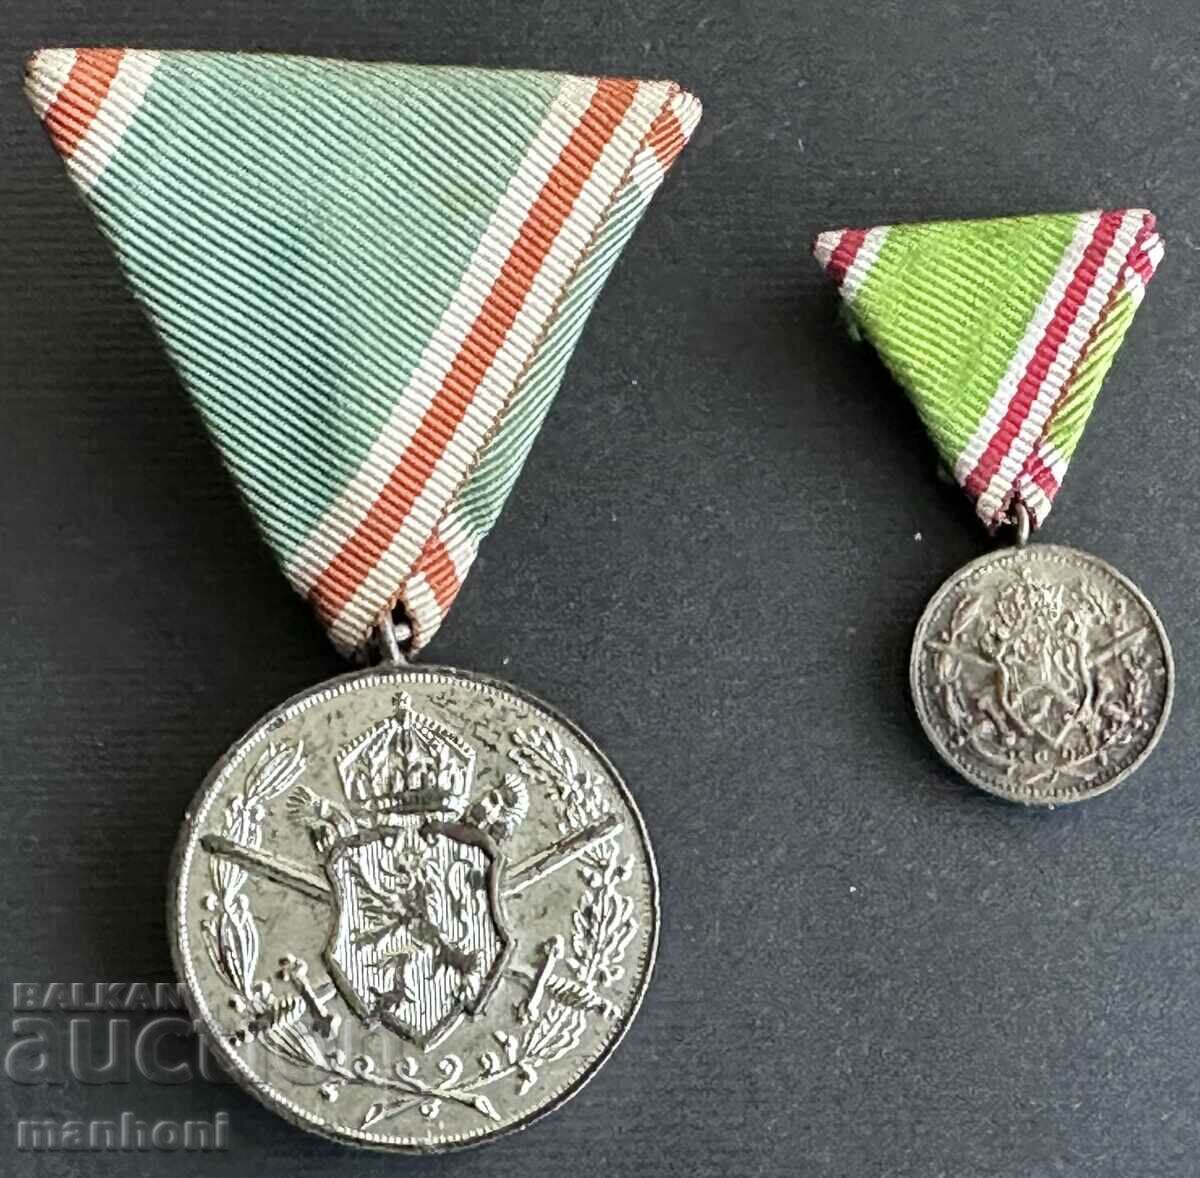 4901 Kingdom of Bulgaria medal and miniature Balkan War 1913